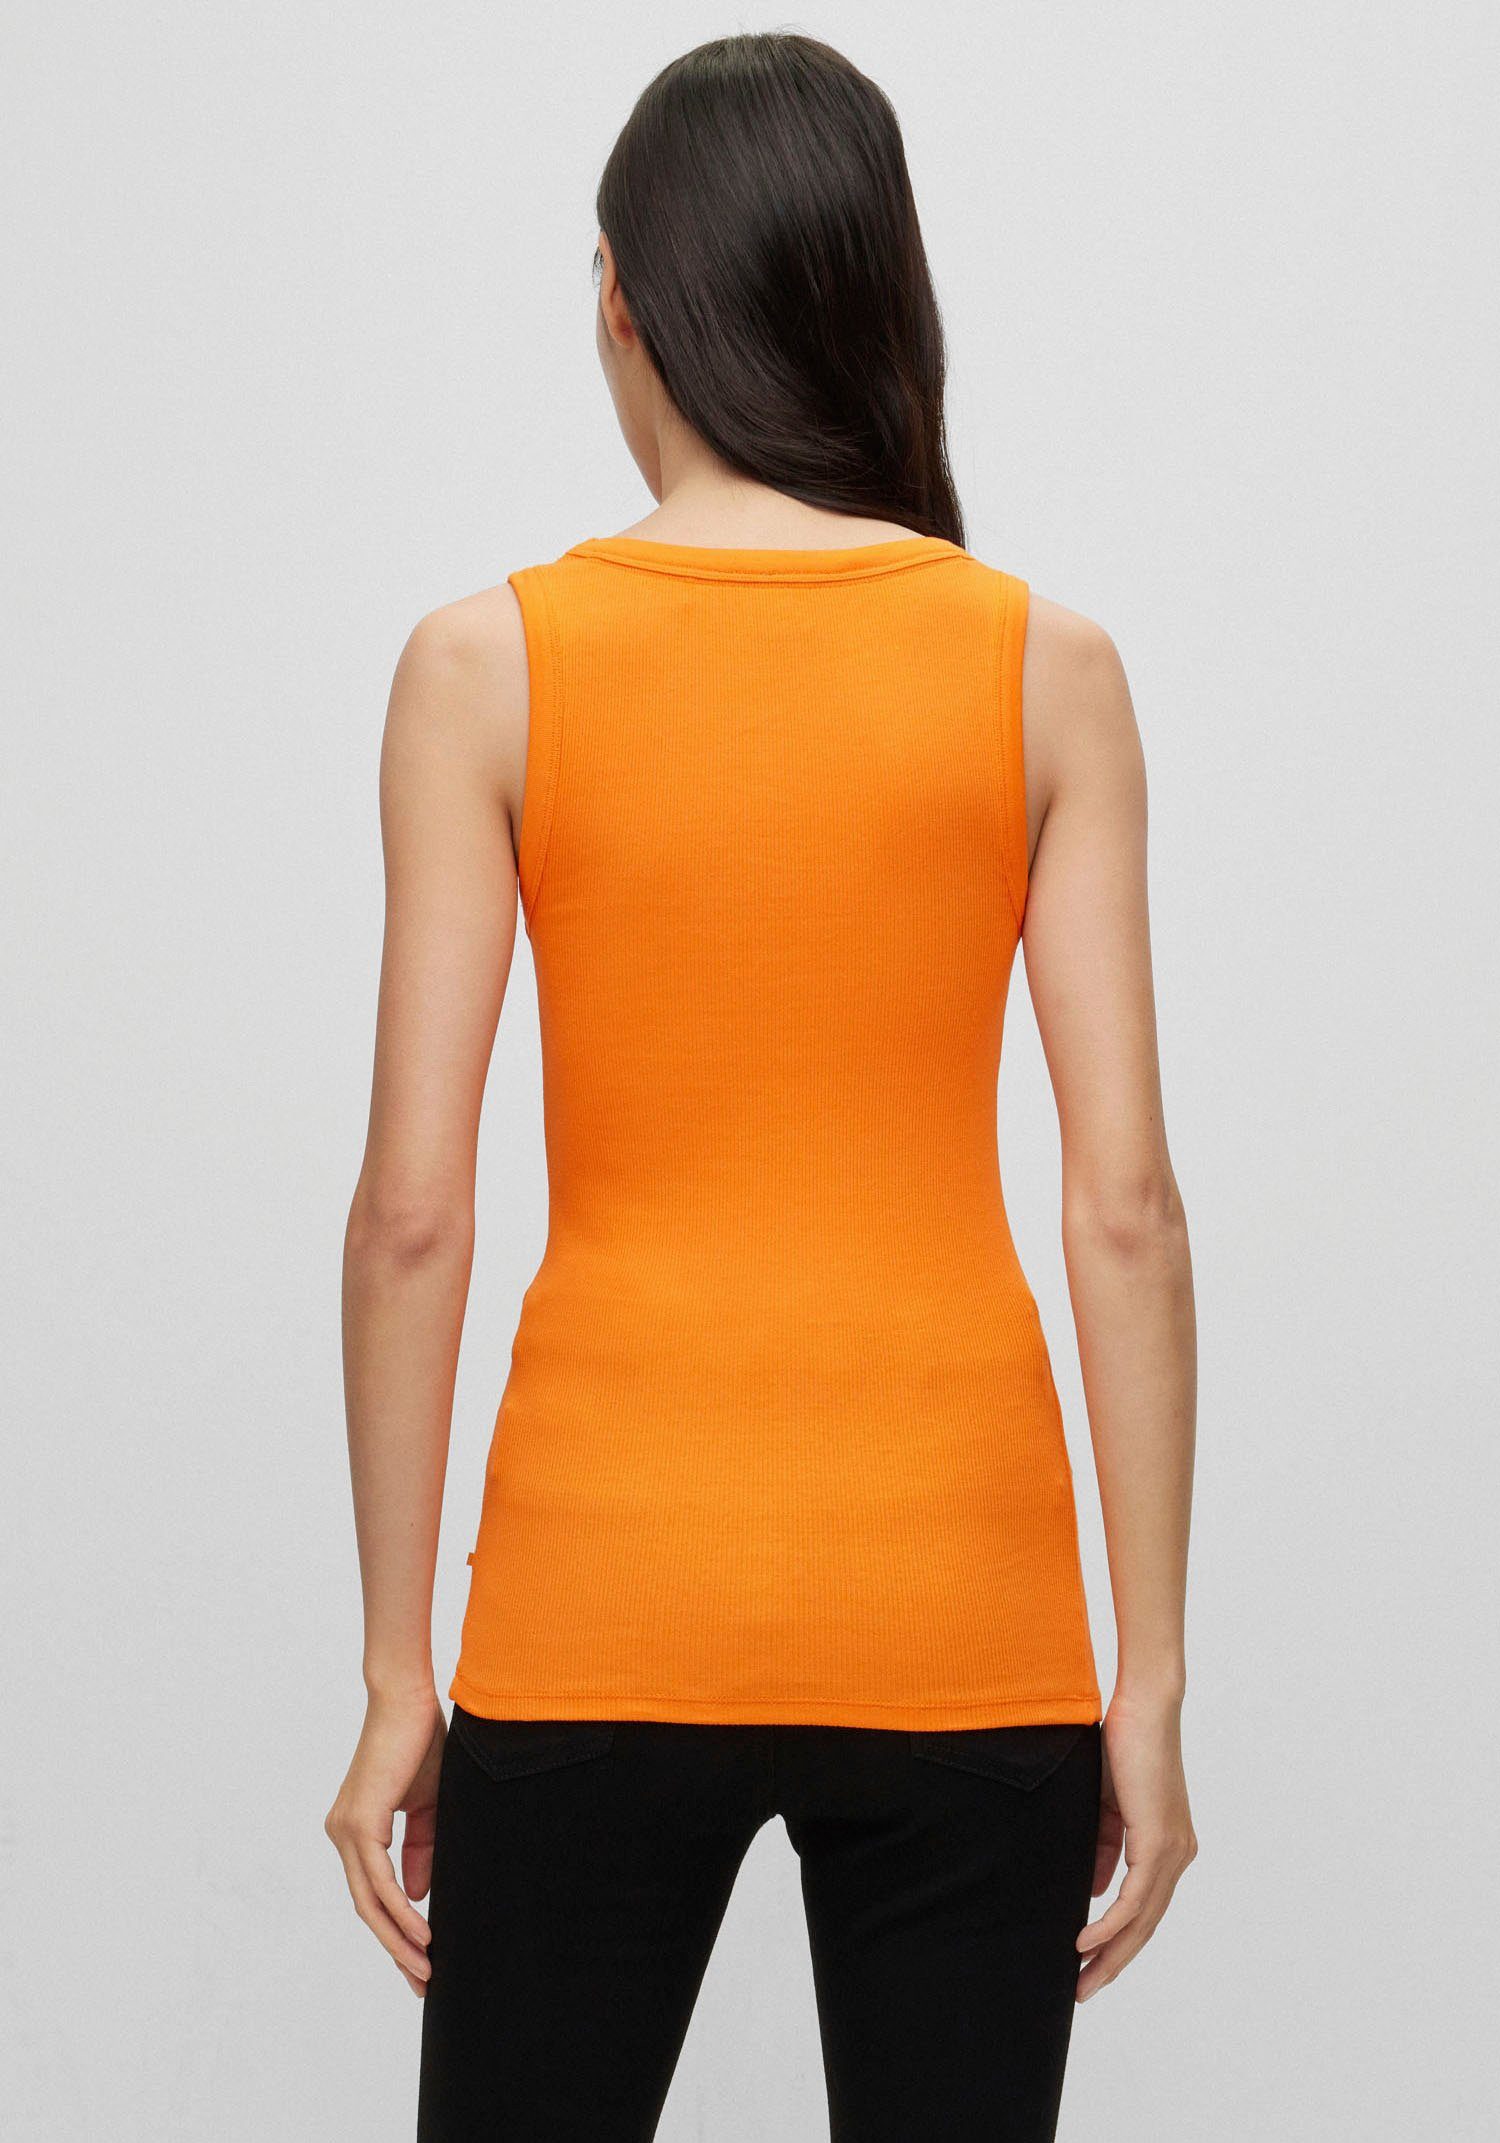 Muskelshirt mit ORANGE BOSS BOSS Bright_Orange Markenstreifen innen